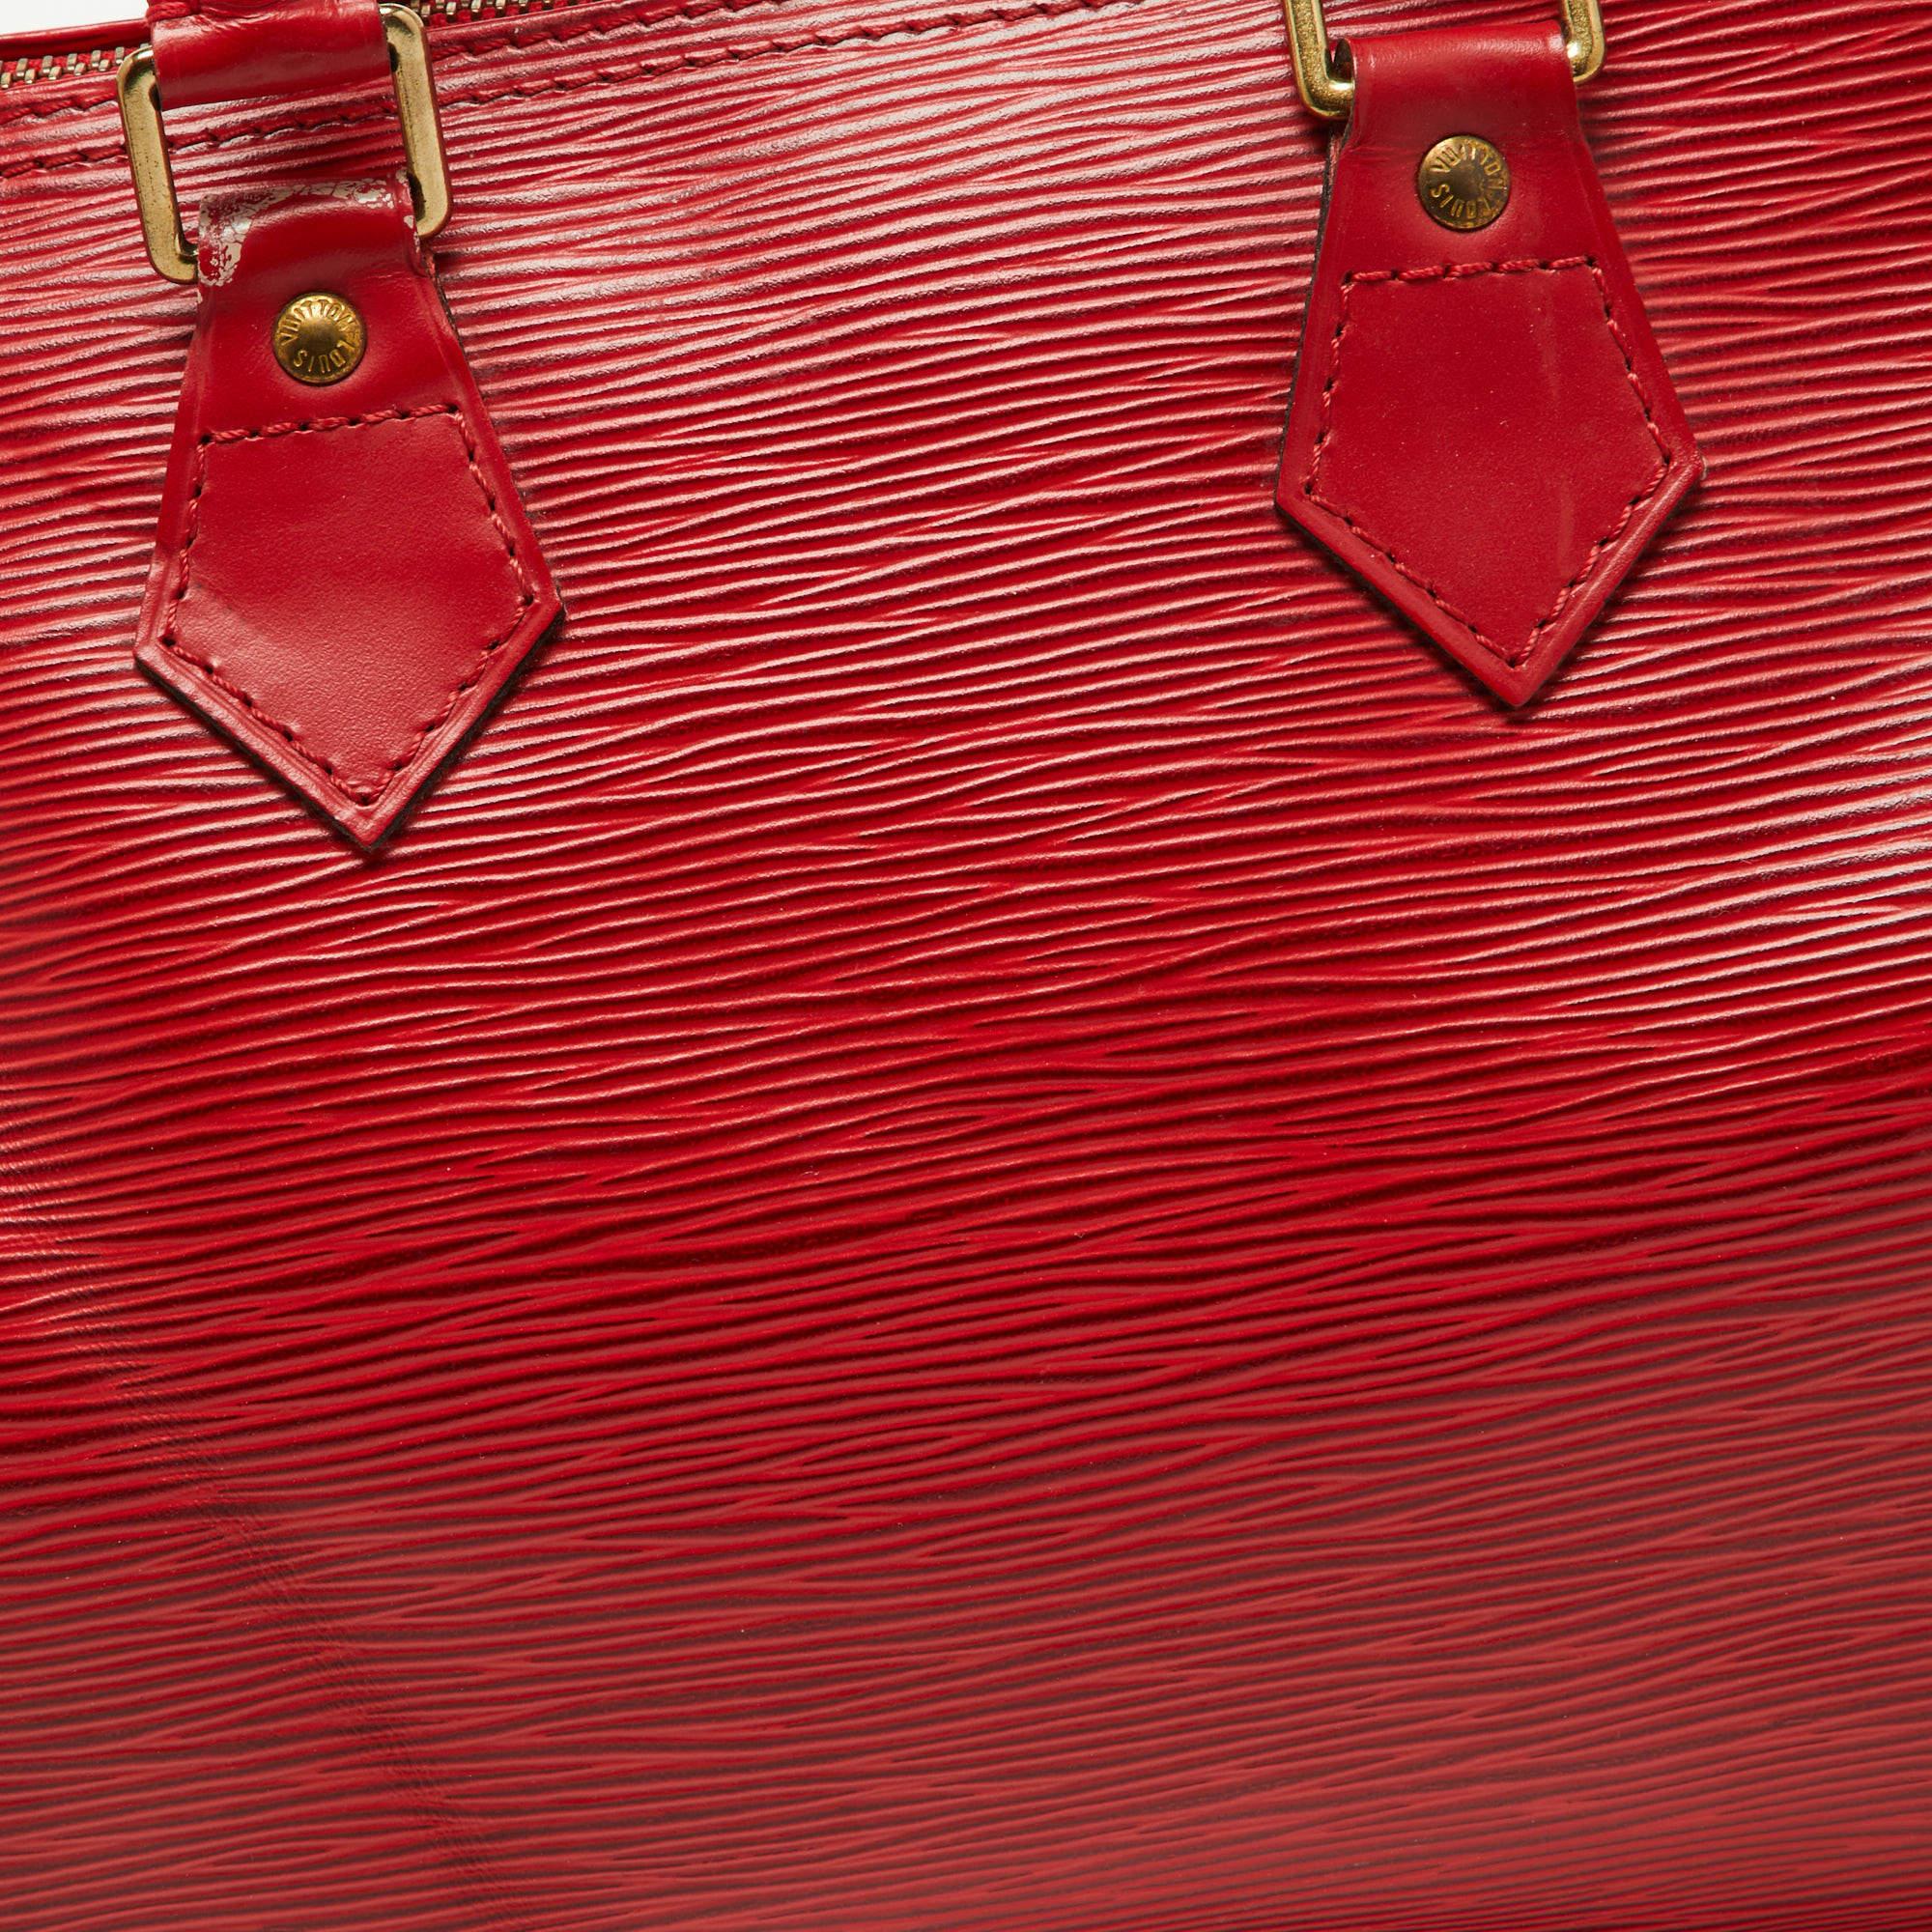 Louis Vuitton Red Epi Leather Speedy 25 Bag 2